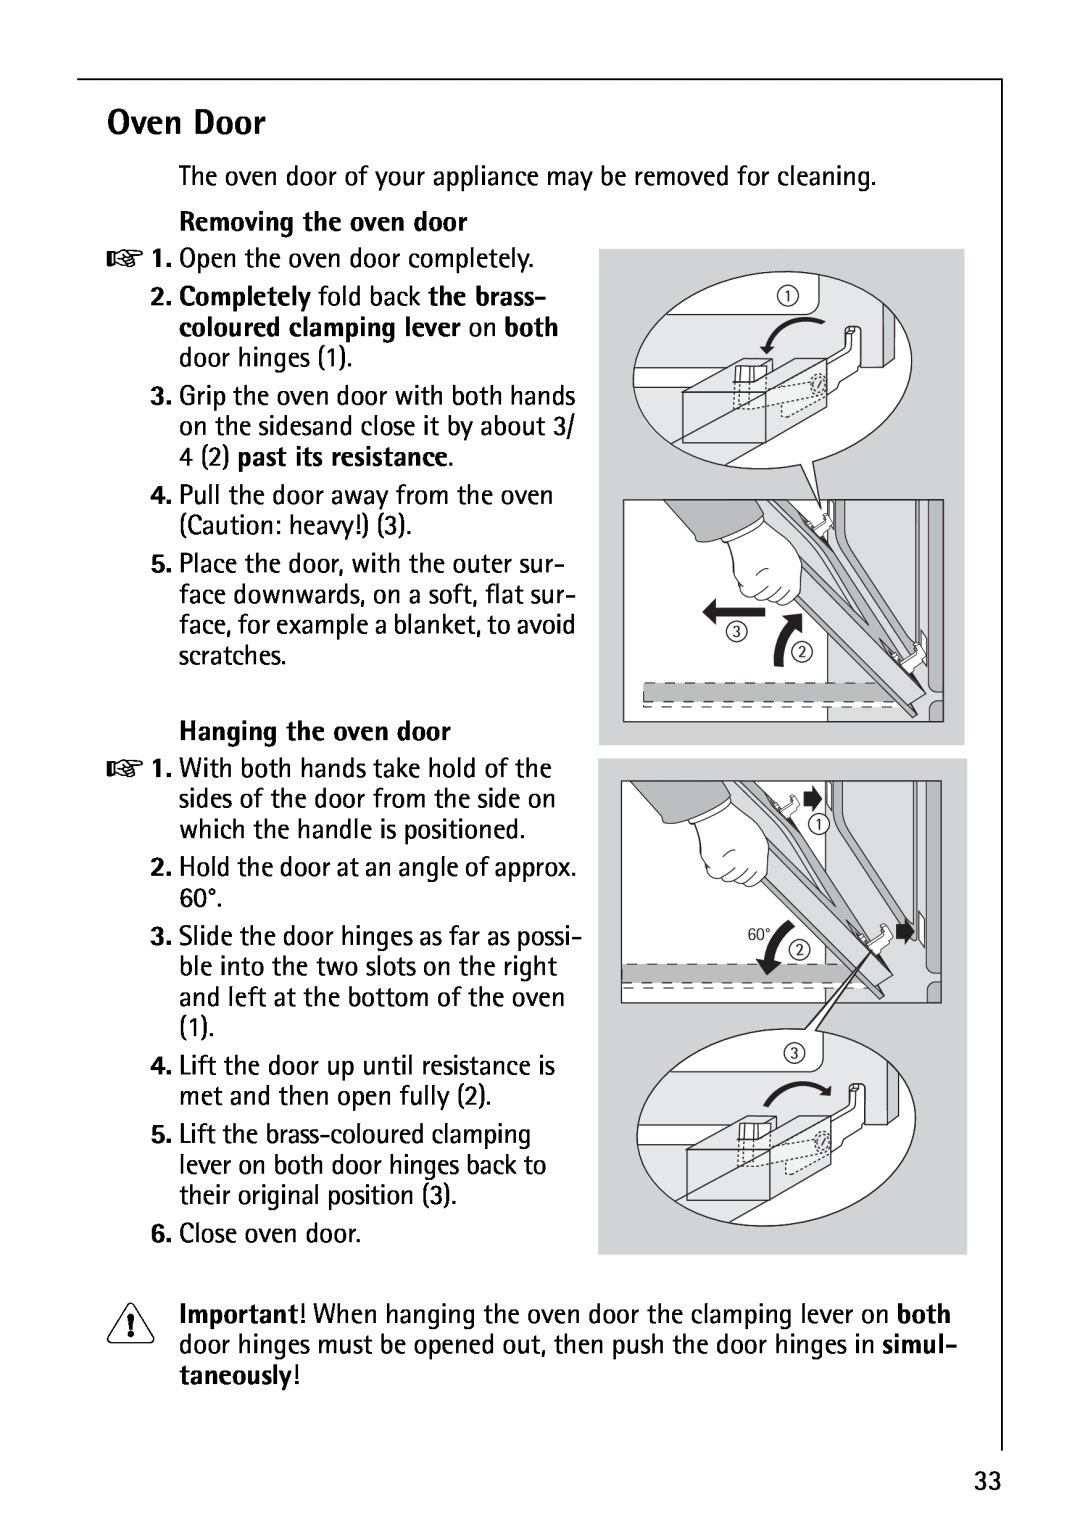 AEG B3040-1 manual Oven Door, Removing the oven door, Hanging the oven door 